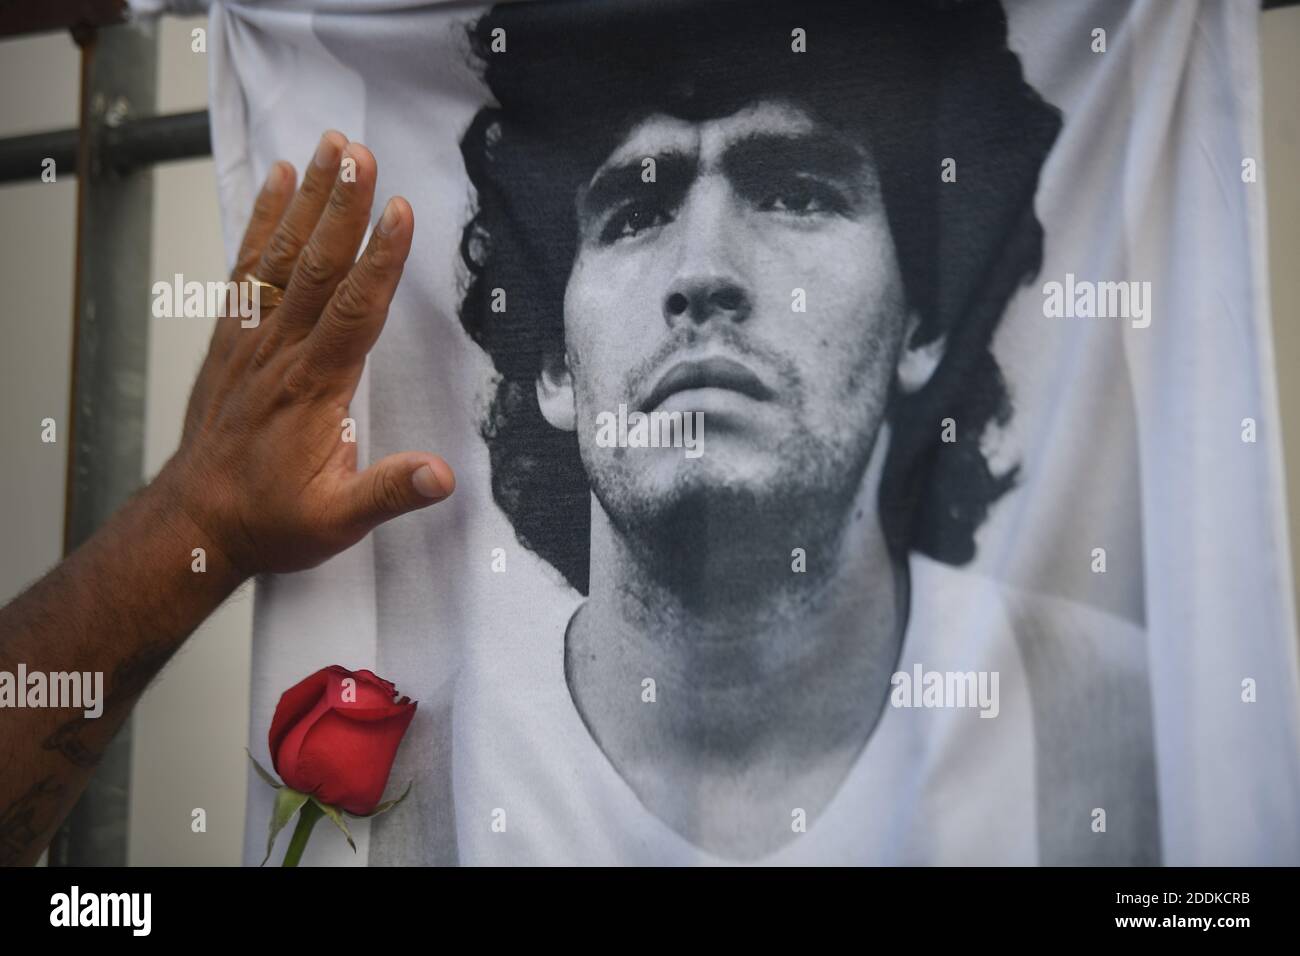 Buenos Aires, Argentinien. November 2020. Ein Fan legt seine Hand mit einer Rose auf ein T-Shirt mit dem Bild des Fußballstars Diego Maradona am Tag seines Todes. Maradona starb in einem Haus in Tigre nördlich von Buenos Aires. Kredit: Fernando Gens/dpa/Alamy Live Nachrichten Stockfoto